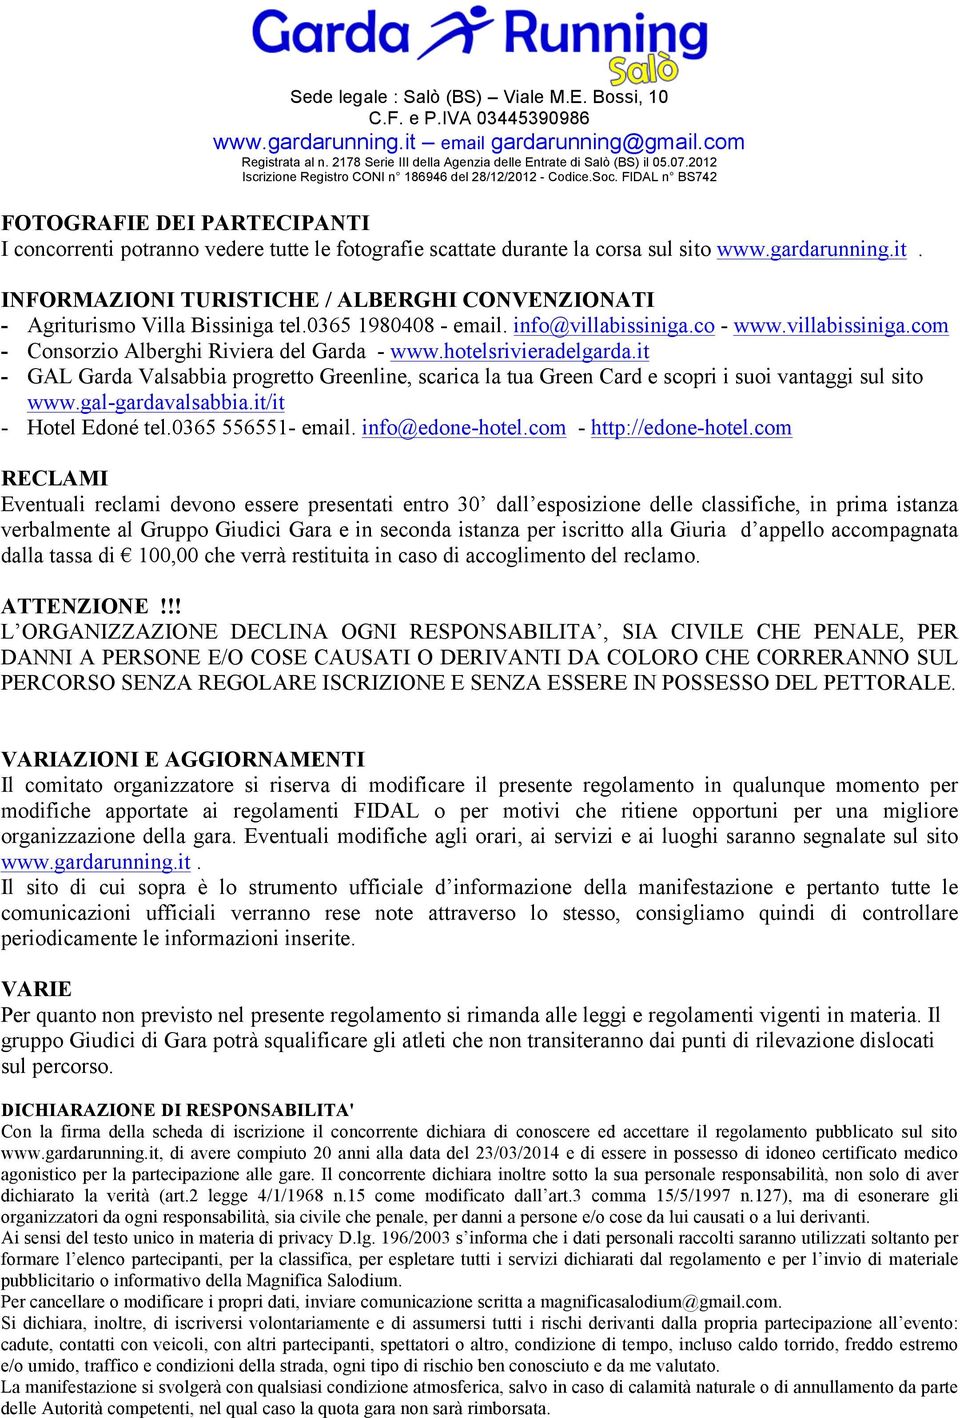 it - GAL Garda Valsabbia progretto Greenline, scarica la tua Green Card e scopri i suoi vantaggi sul sito www.gal-gardavalsabbia.it/it - Hotel Edoné tel.0365 556551- email. info@edone-hotel.